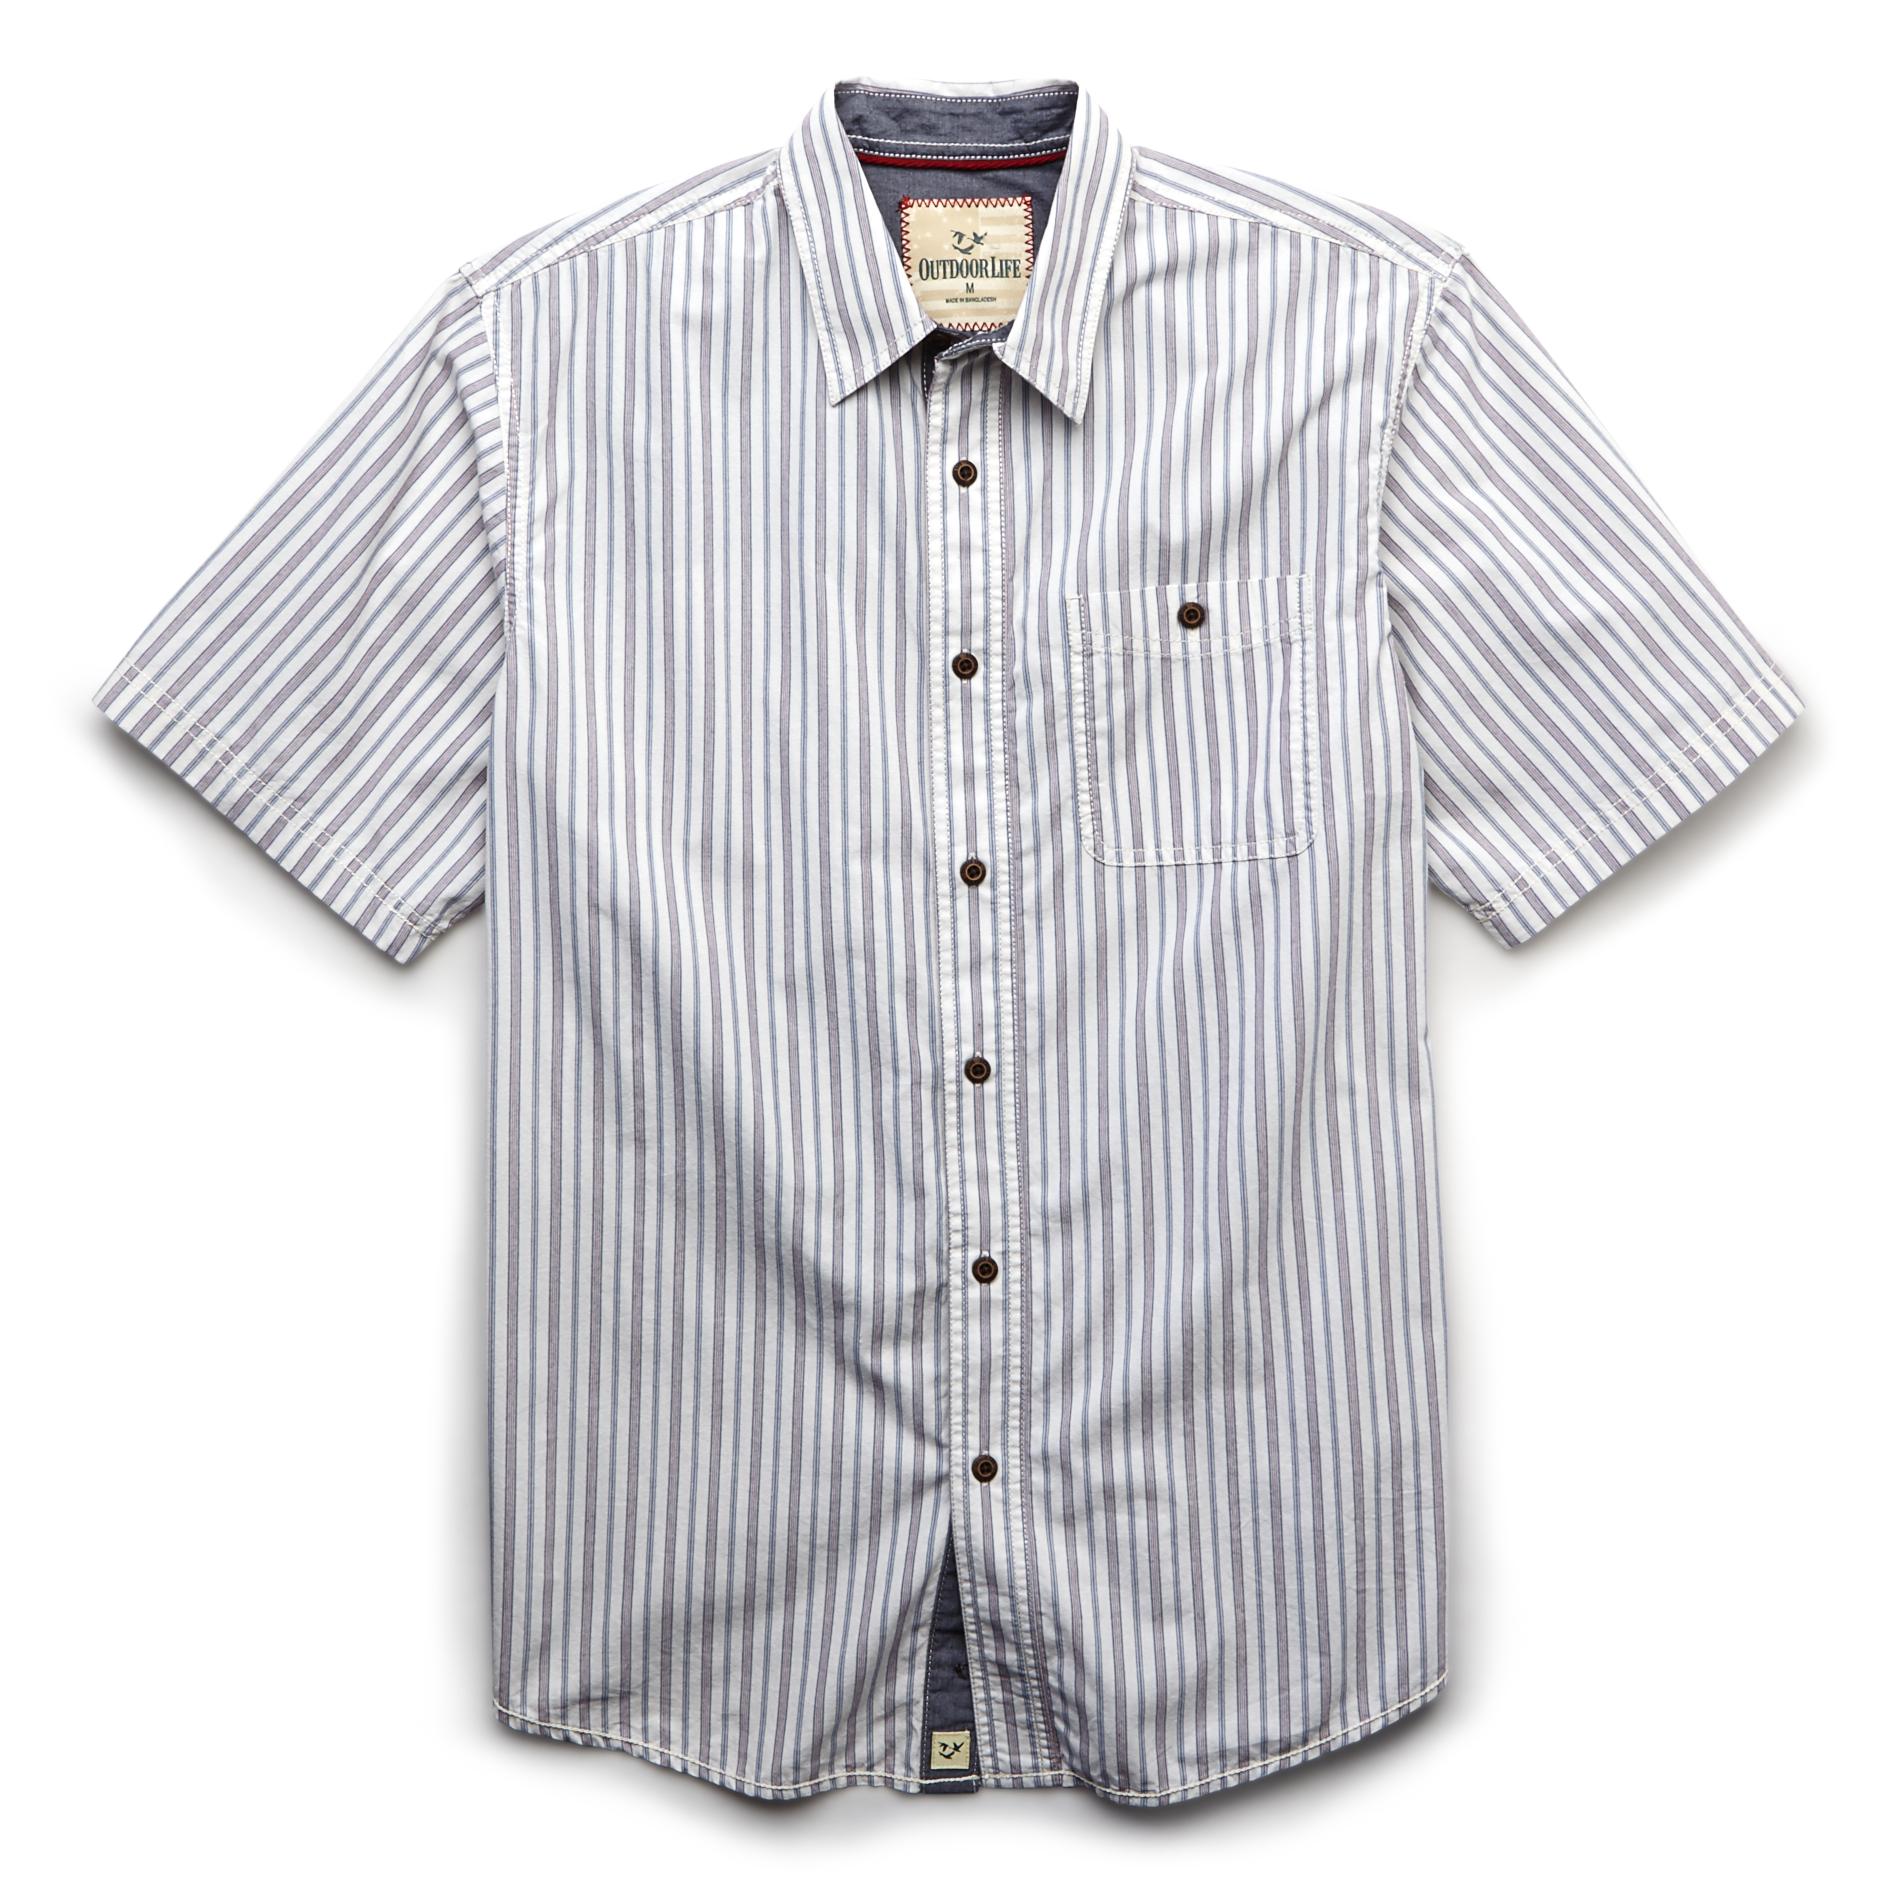 Outdoor Life&reg; Men's Short Sleeve Shirt - Striped